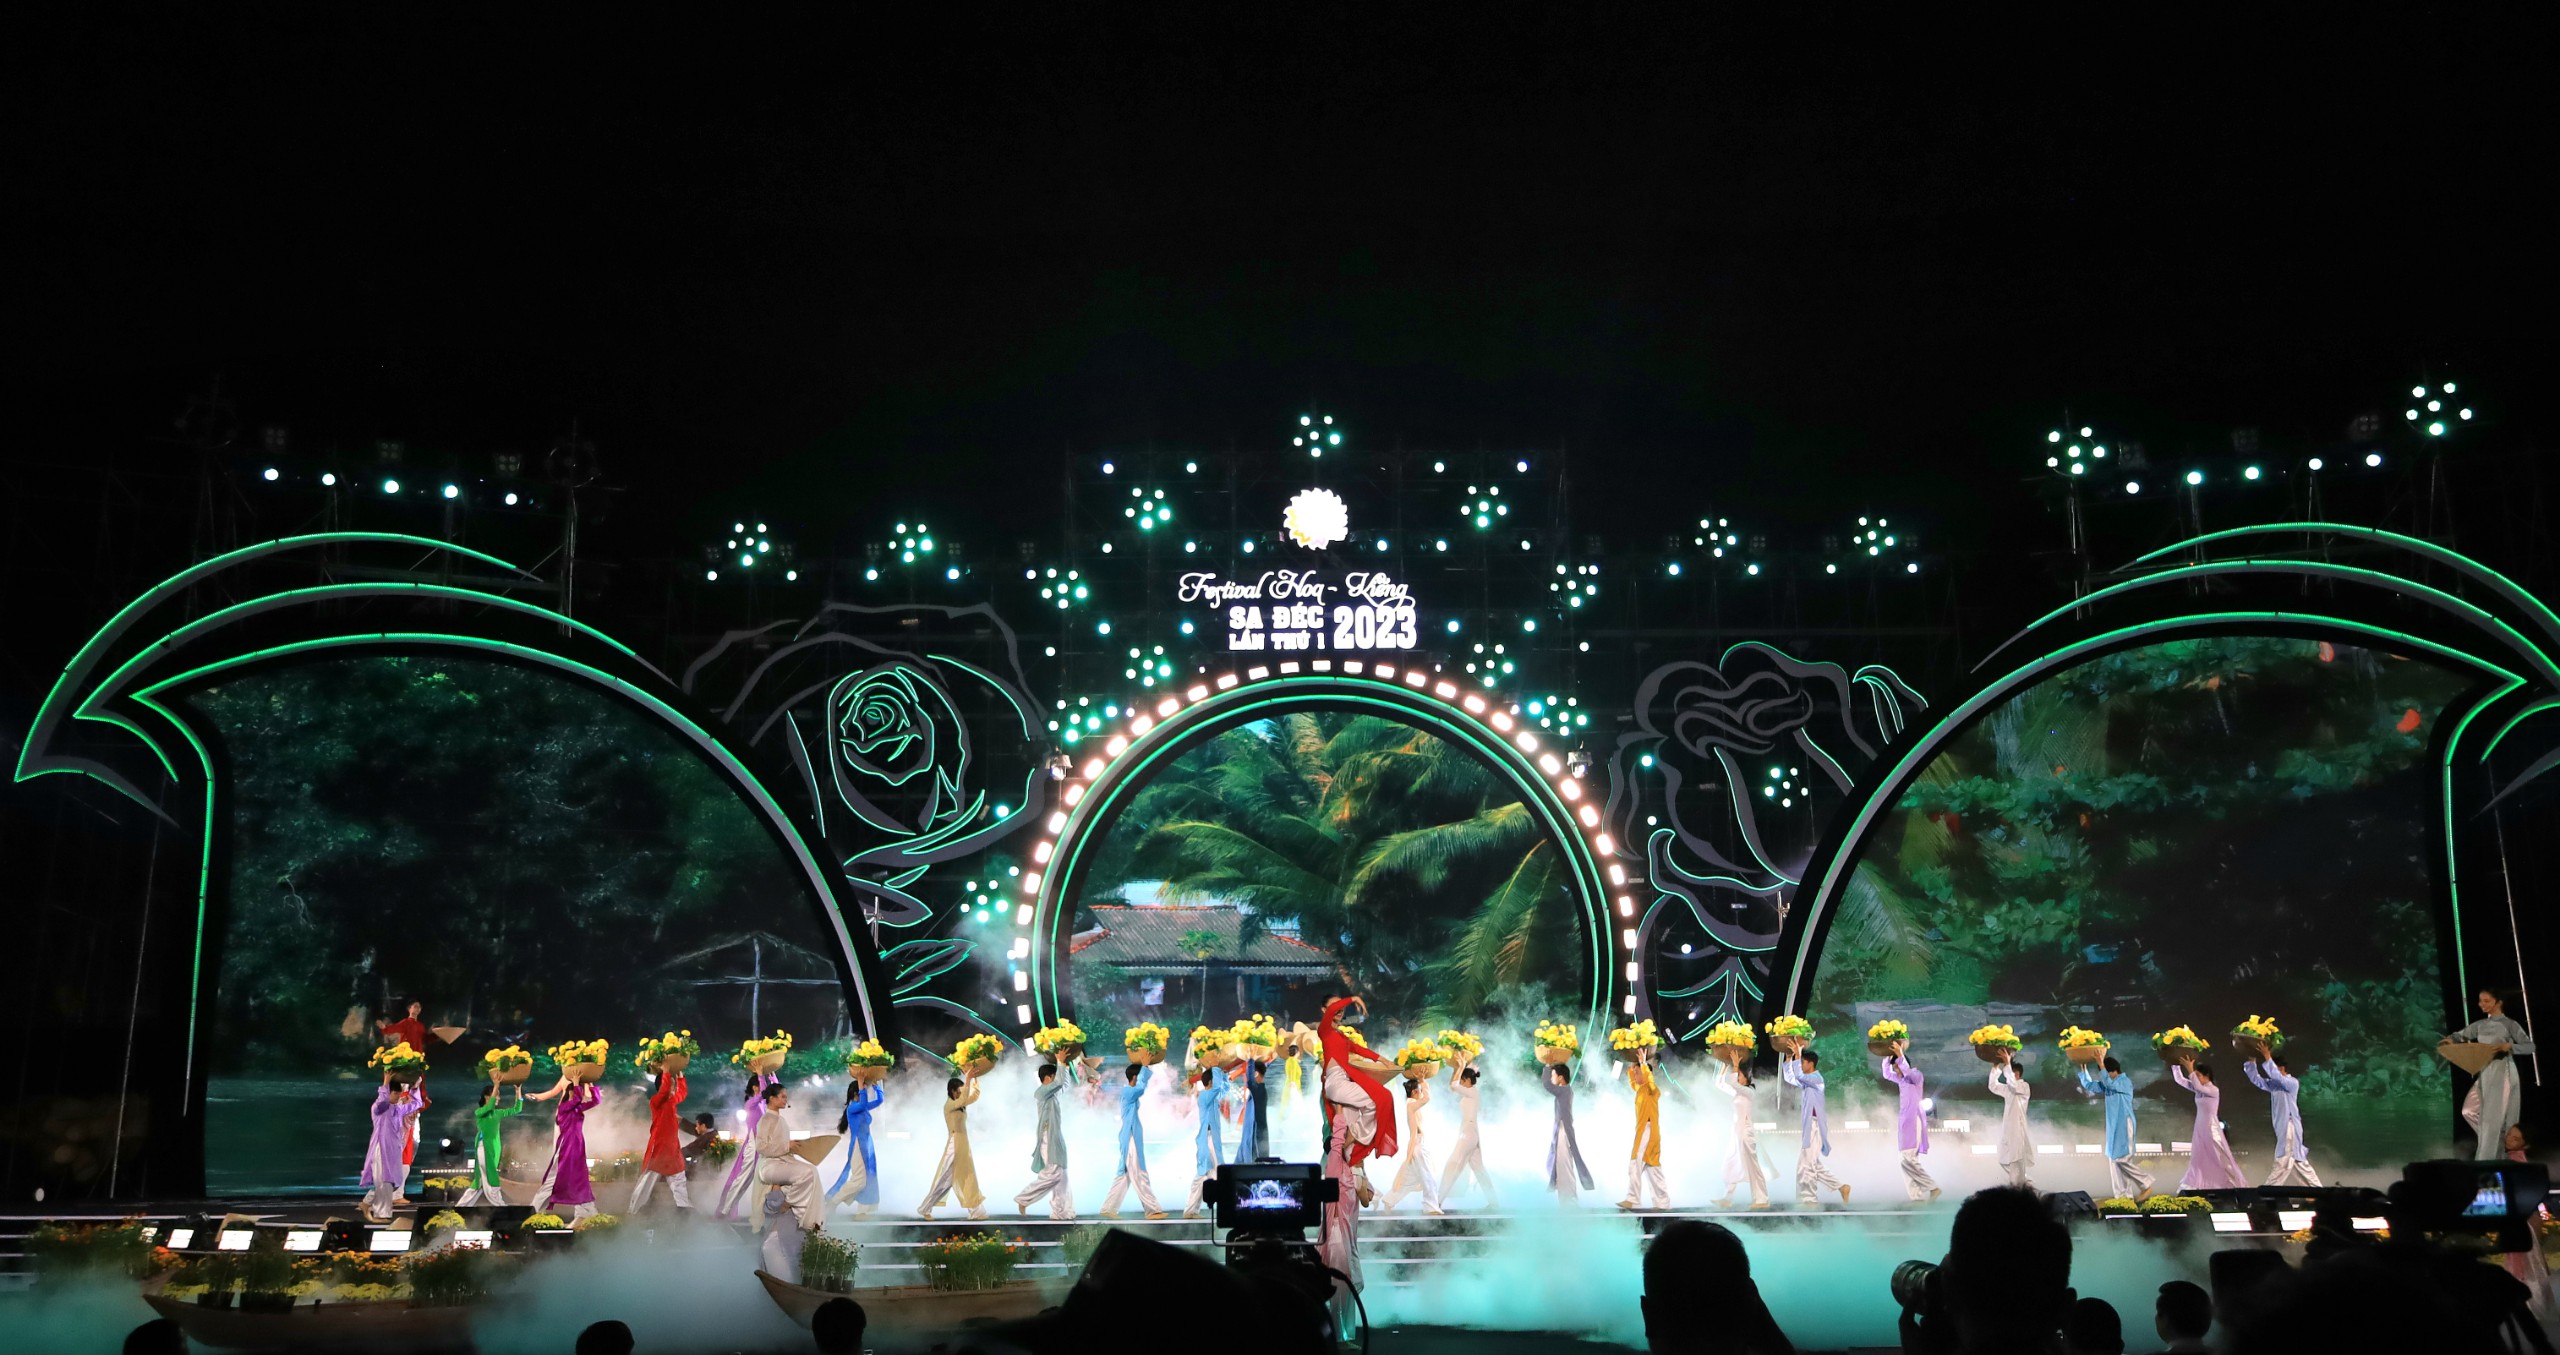 Chương trình lễ khai mạc Festival Hoa - Kiểng Sa Đéc lần thứ I năm 2023 được tổ chức với quy mô hoành tráng, để lại nhiều ấn tượng cho người dân và du khách.